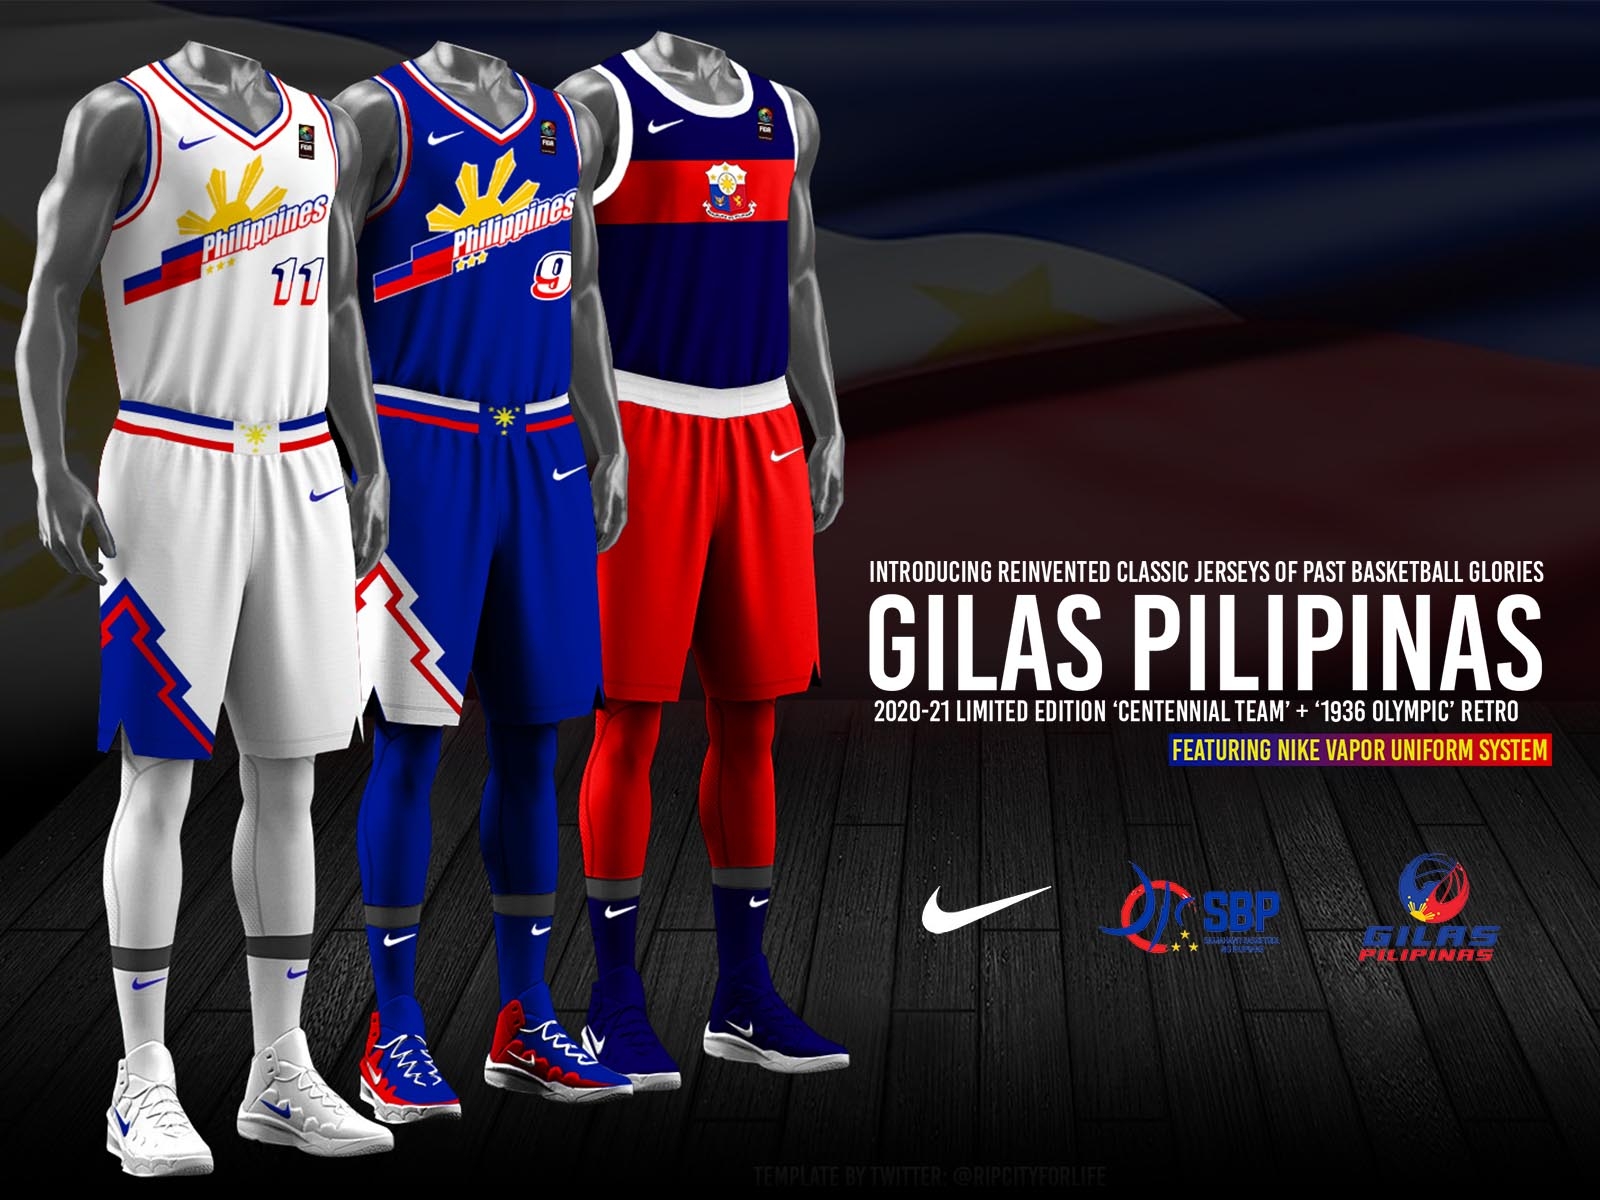 2020-21 Gilas Pilipinas Retro Nike Jerseys #1 by JP Canonigo on Dribbble